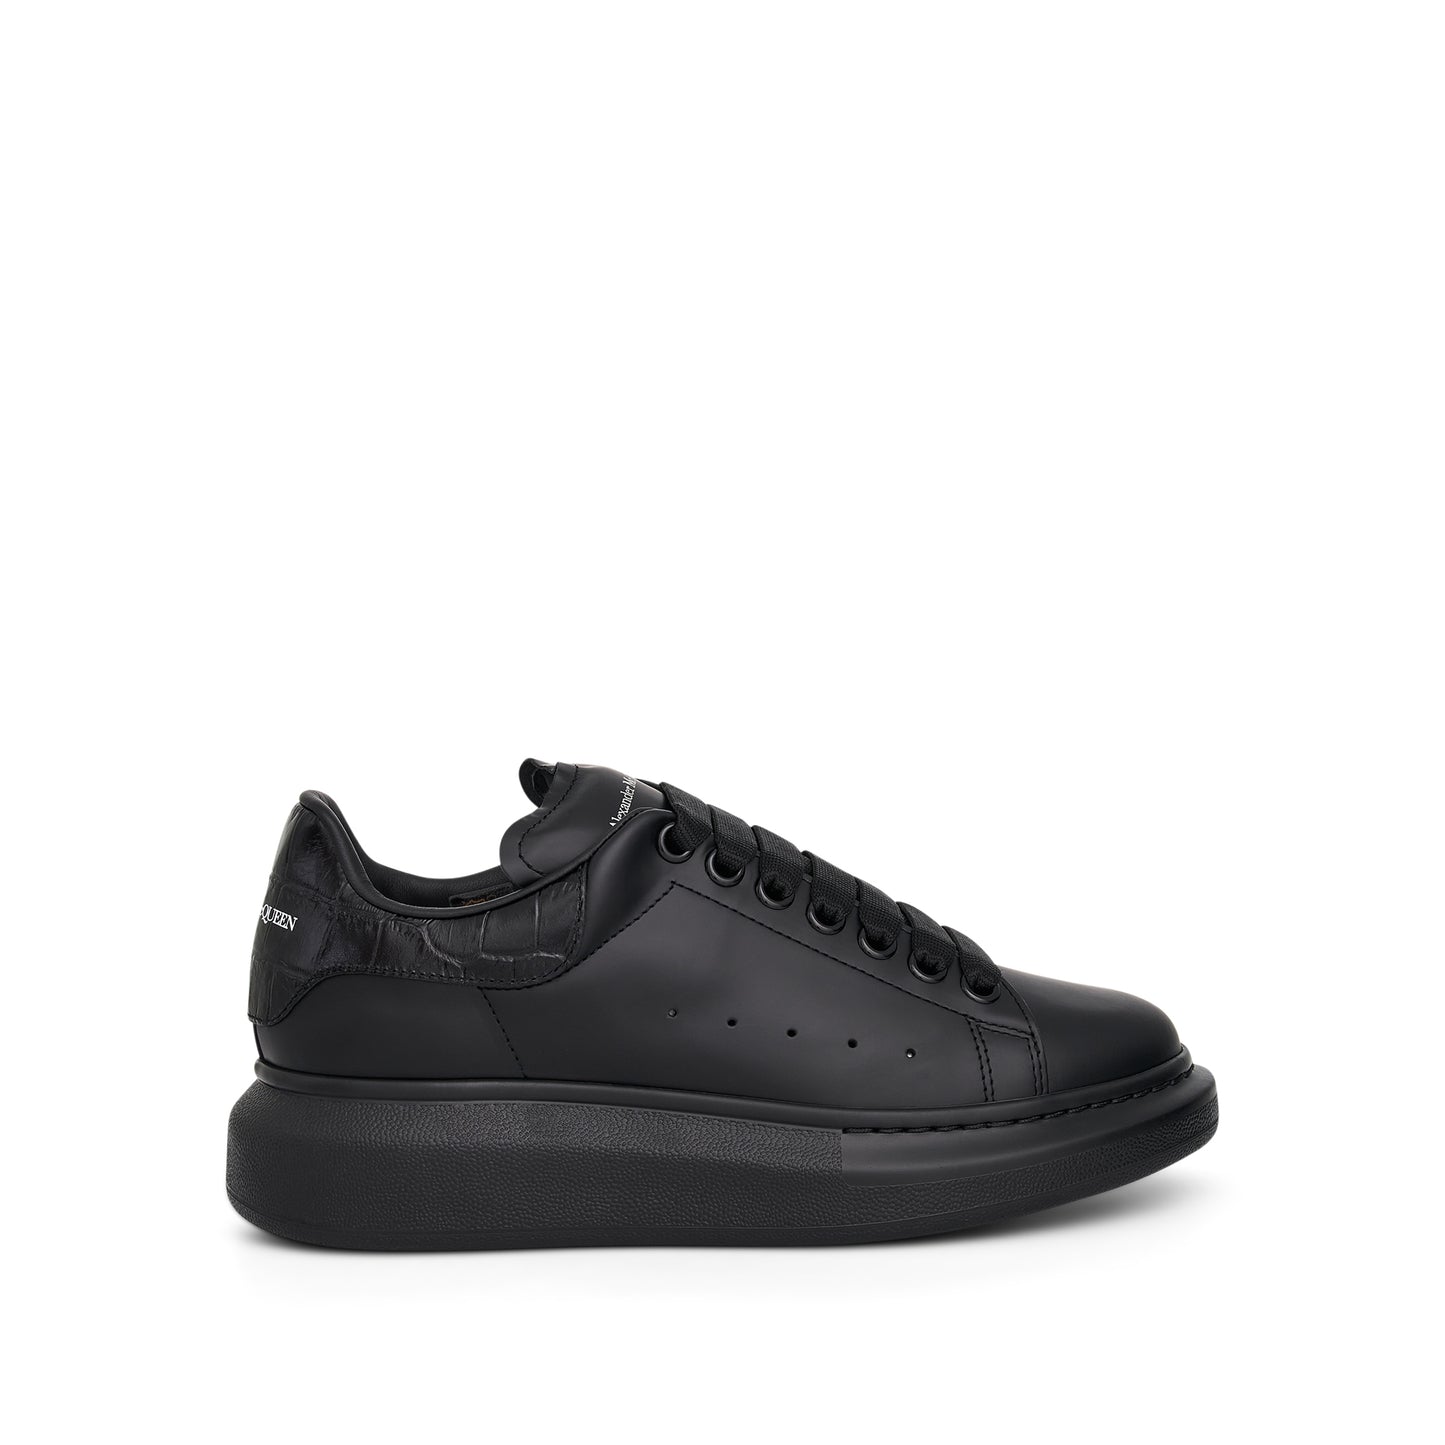 Larry Croco Leather Sneaker in Black